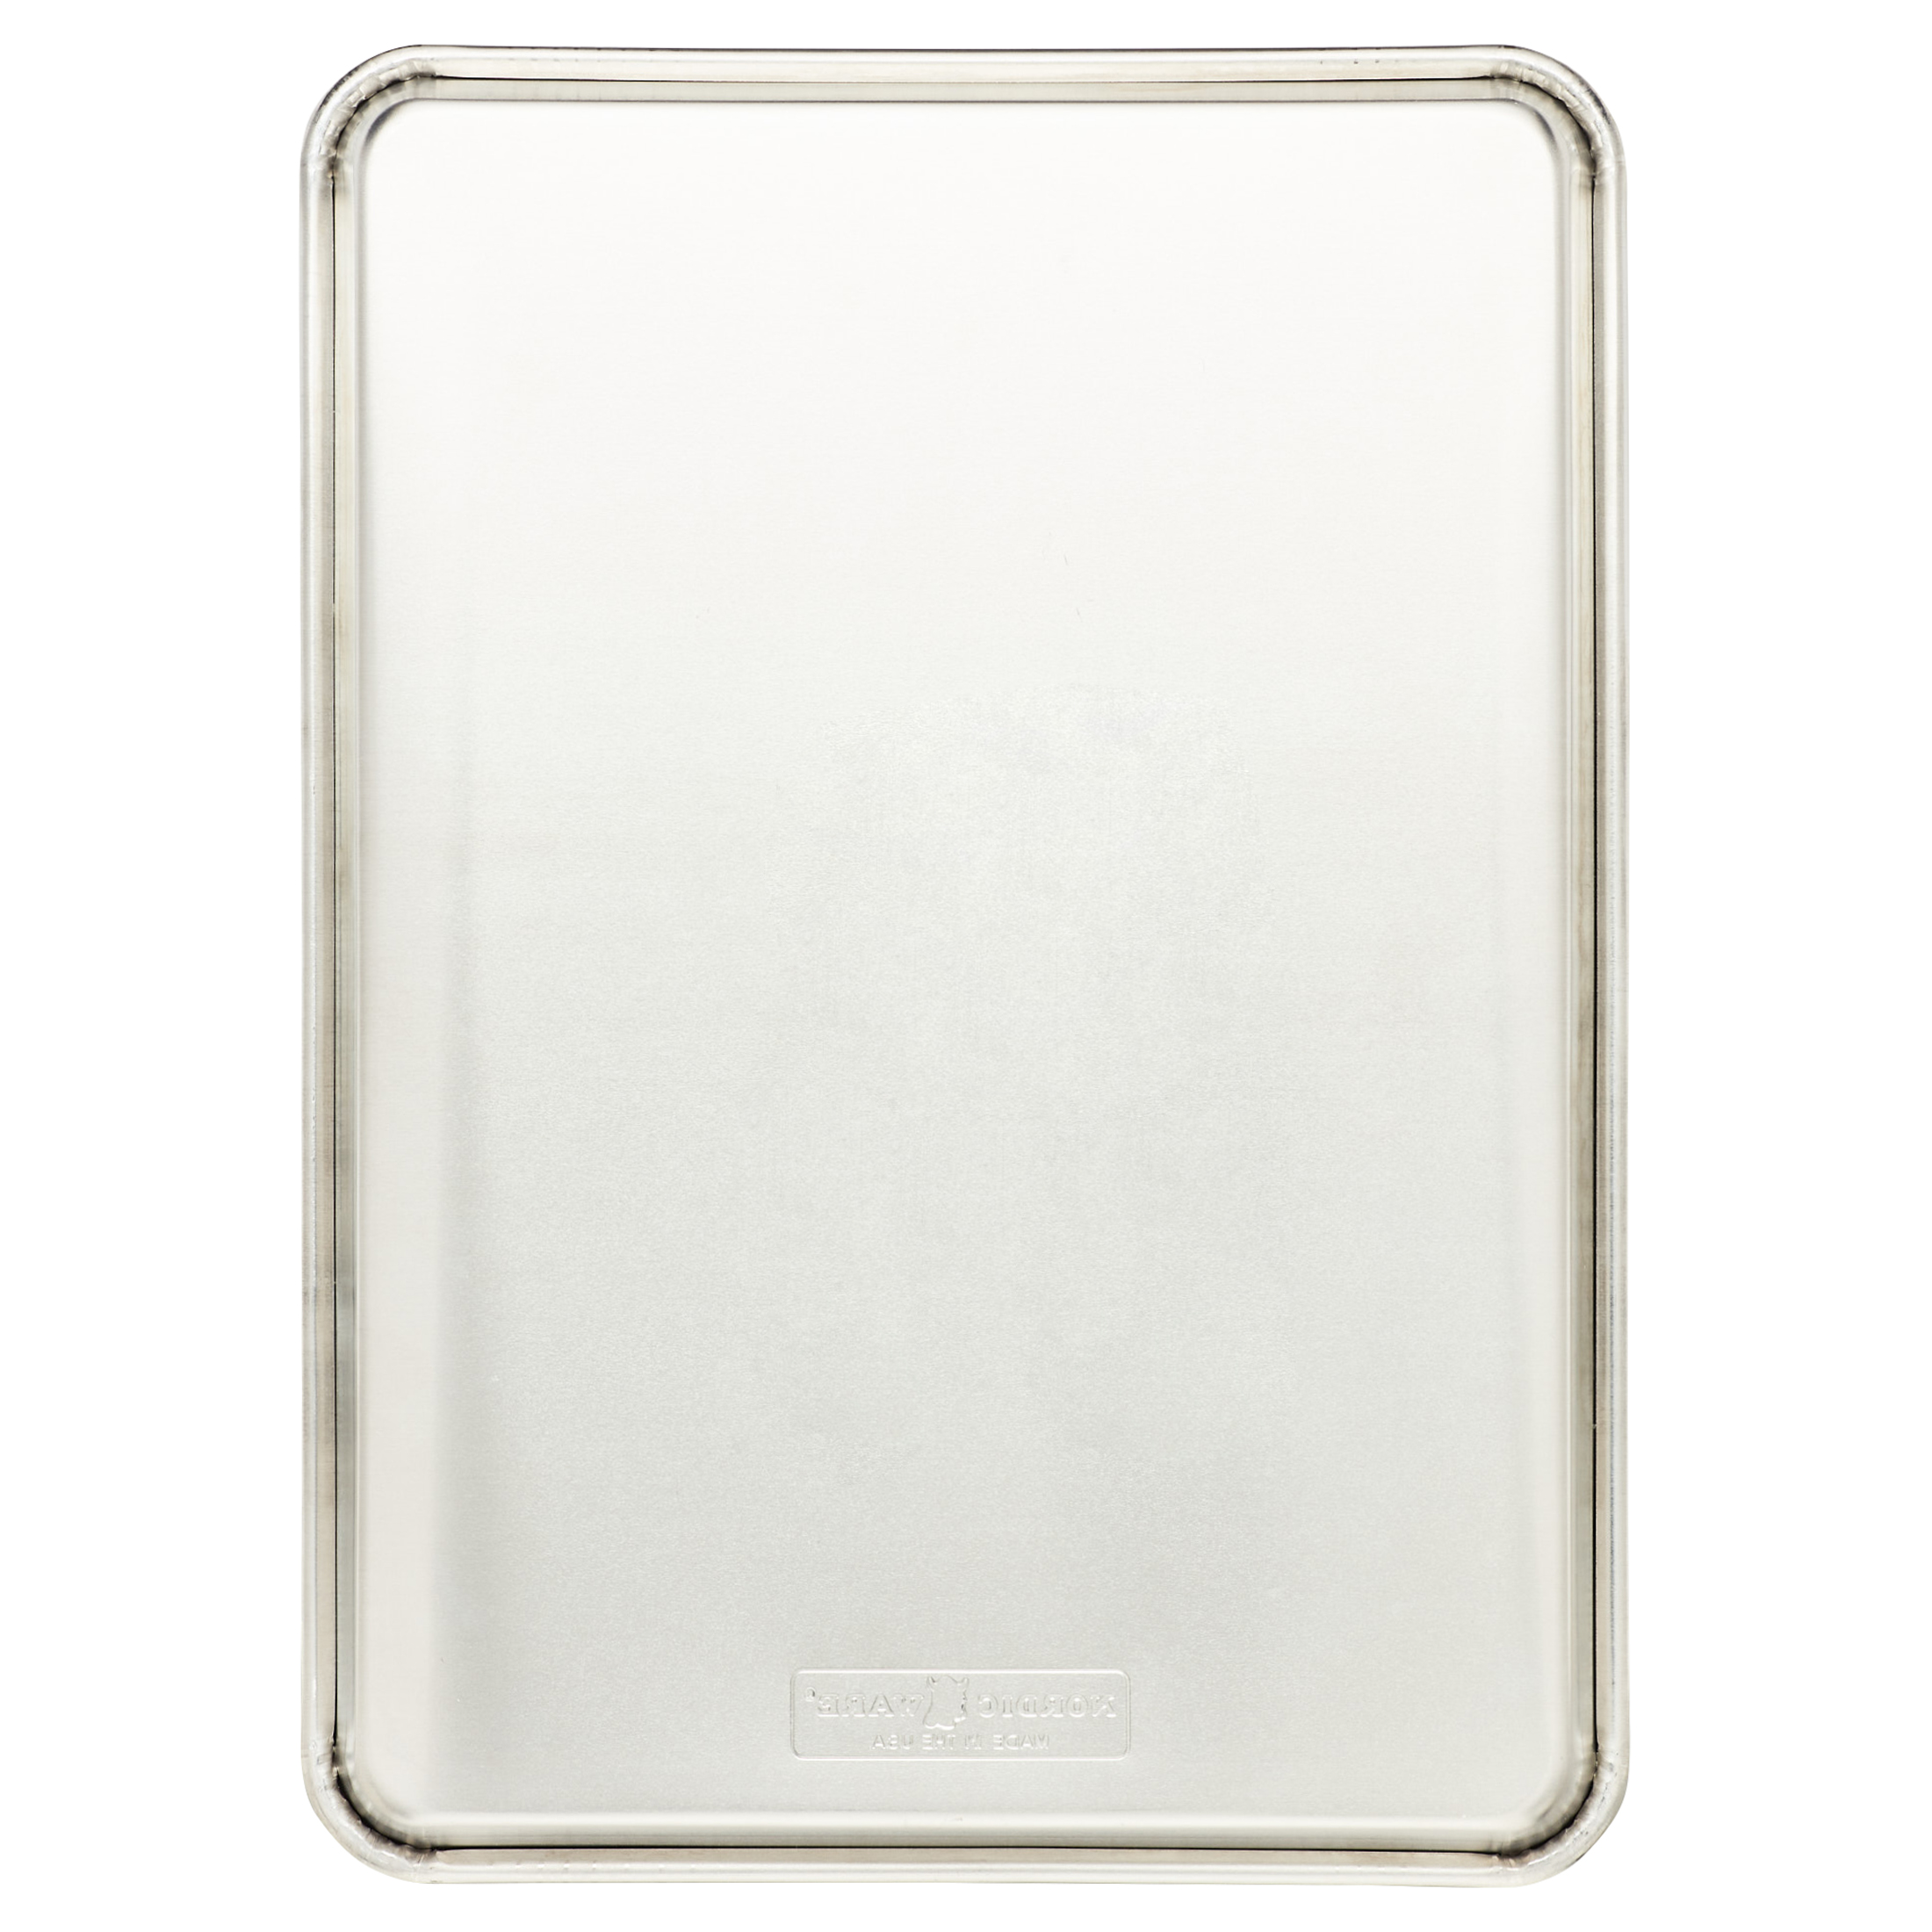 Nordic Ware Natural Aluminum Half Sheet Cookie Pan, 18" x 13" - image 3 of 8